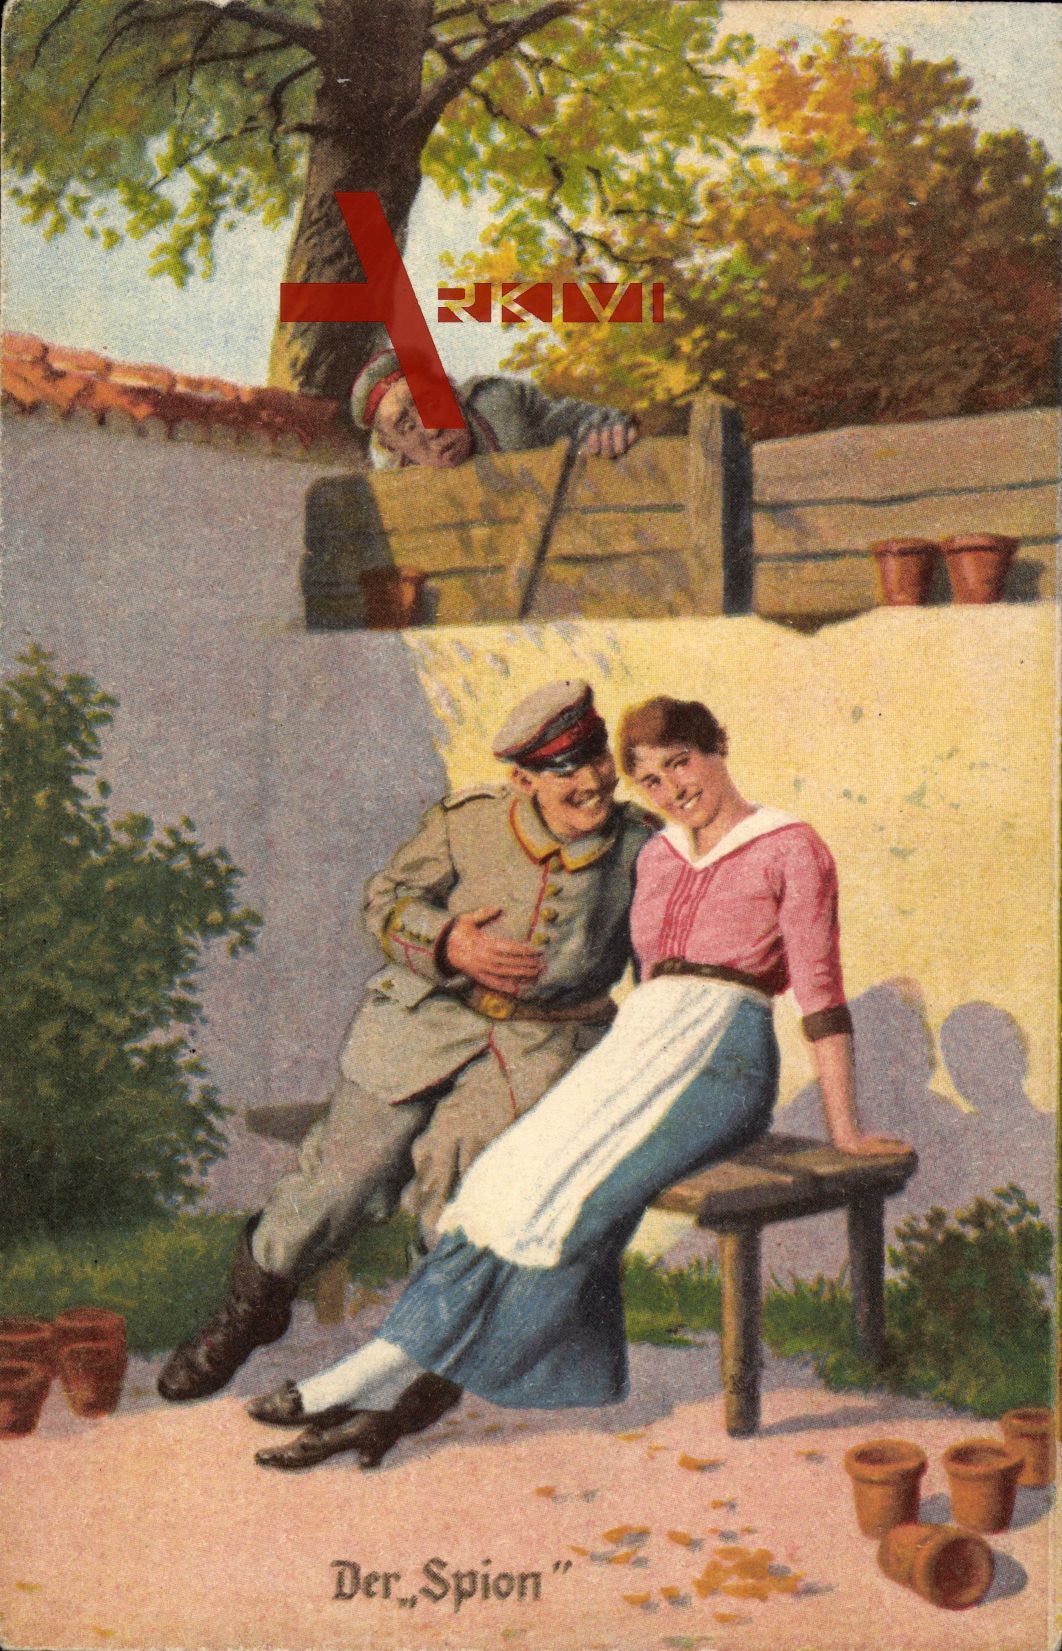 Der Spion, Soldat flirtet mit einer Frau, Karte Nr. 5, Immer Fachmann